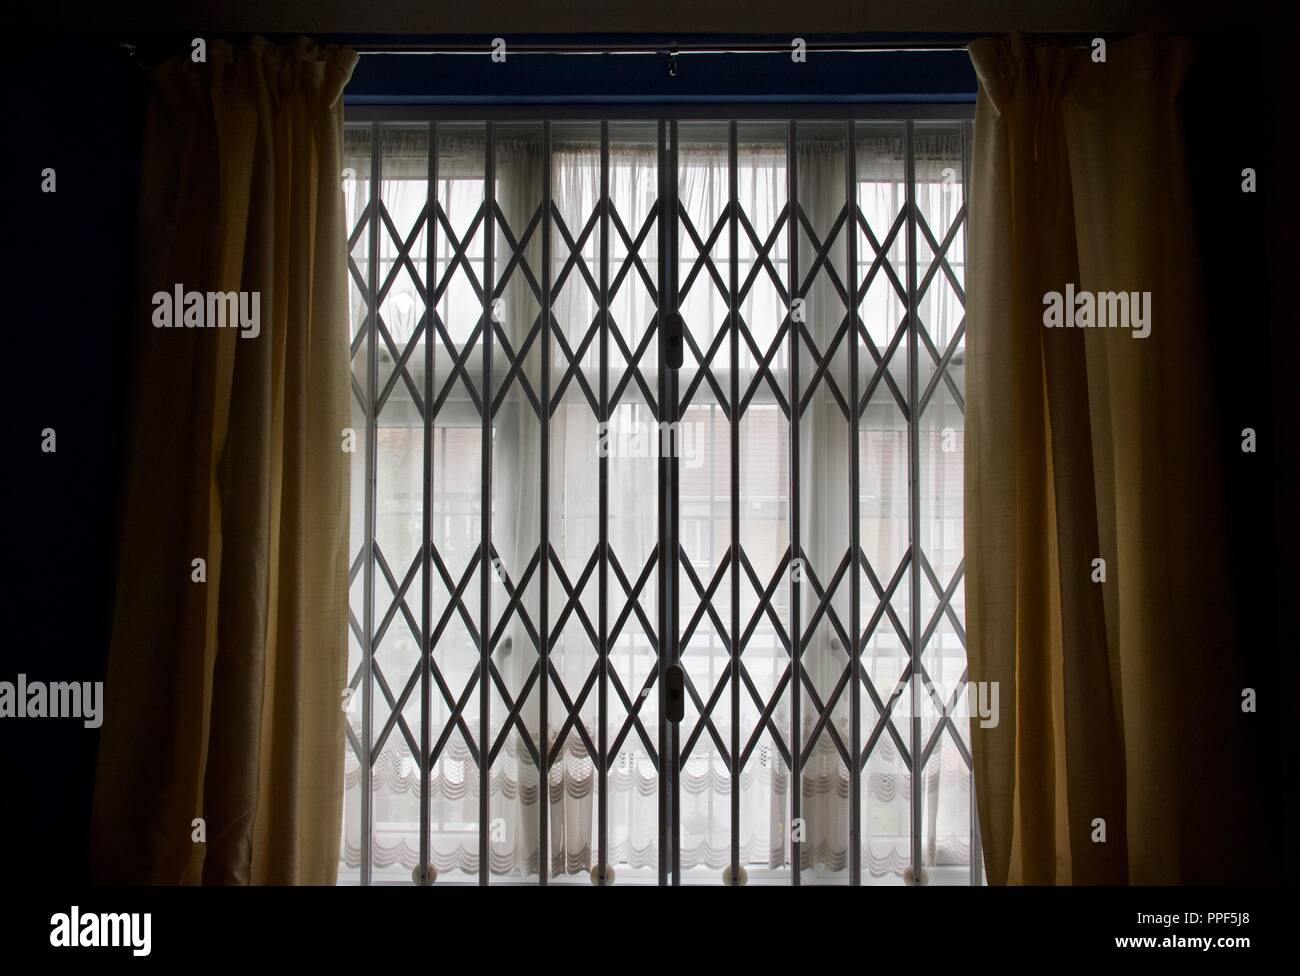 Rejas en las ventanas de seguridad en el hogar, a menudo usado en casas en zonas inseguras para proteger contra los ladrones Foto de stock